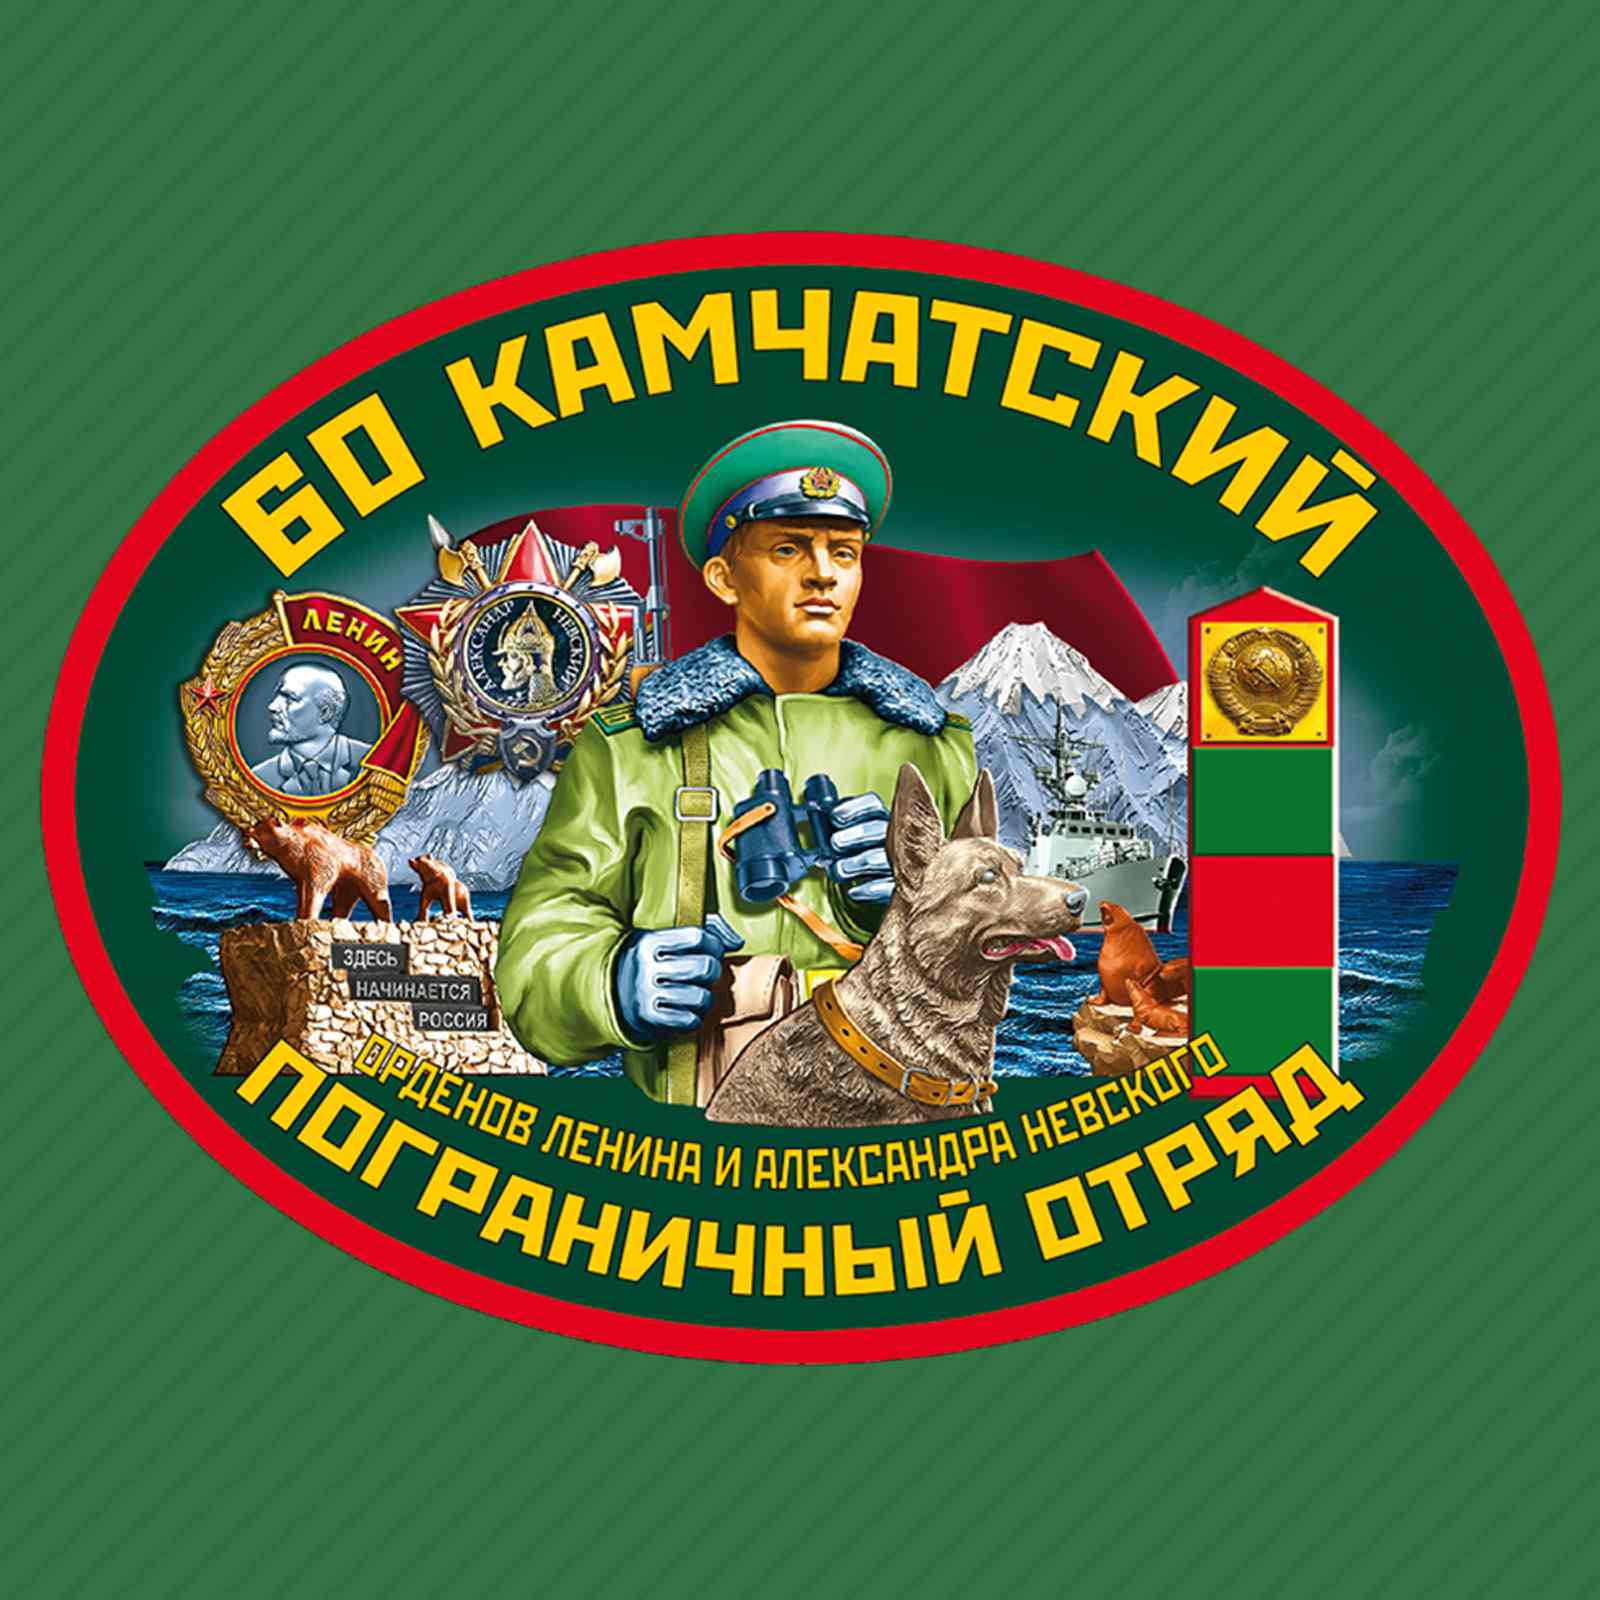 Бейсболка 60 Камчатского пограничного отряда